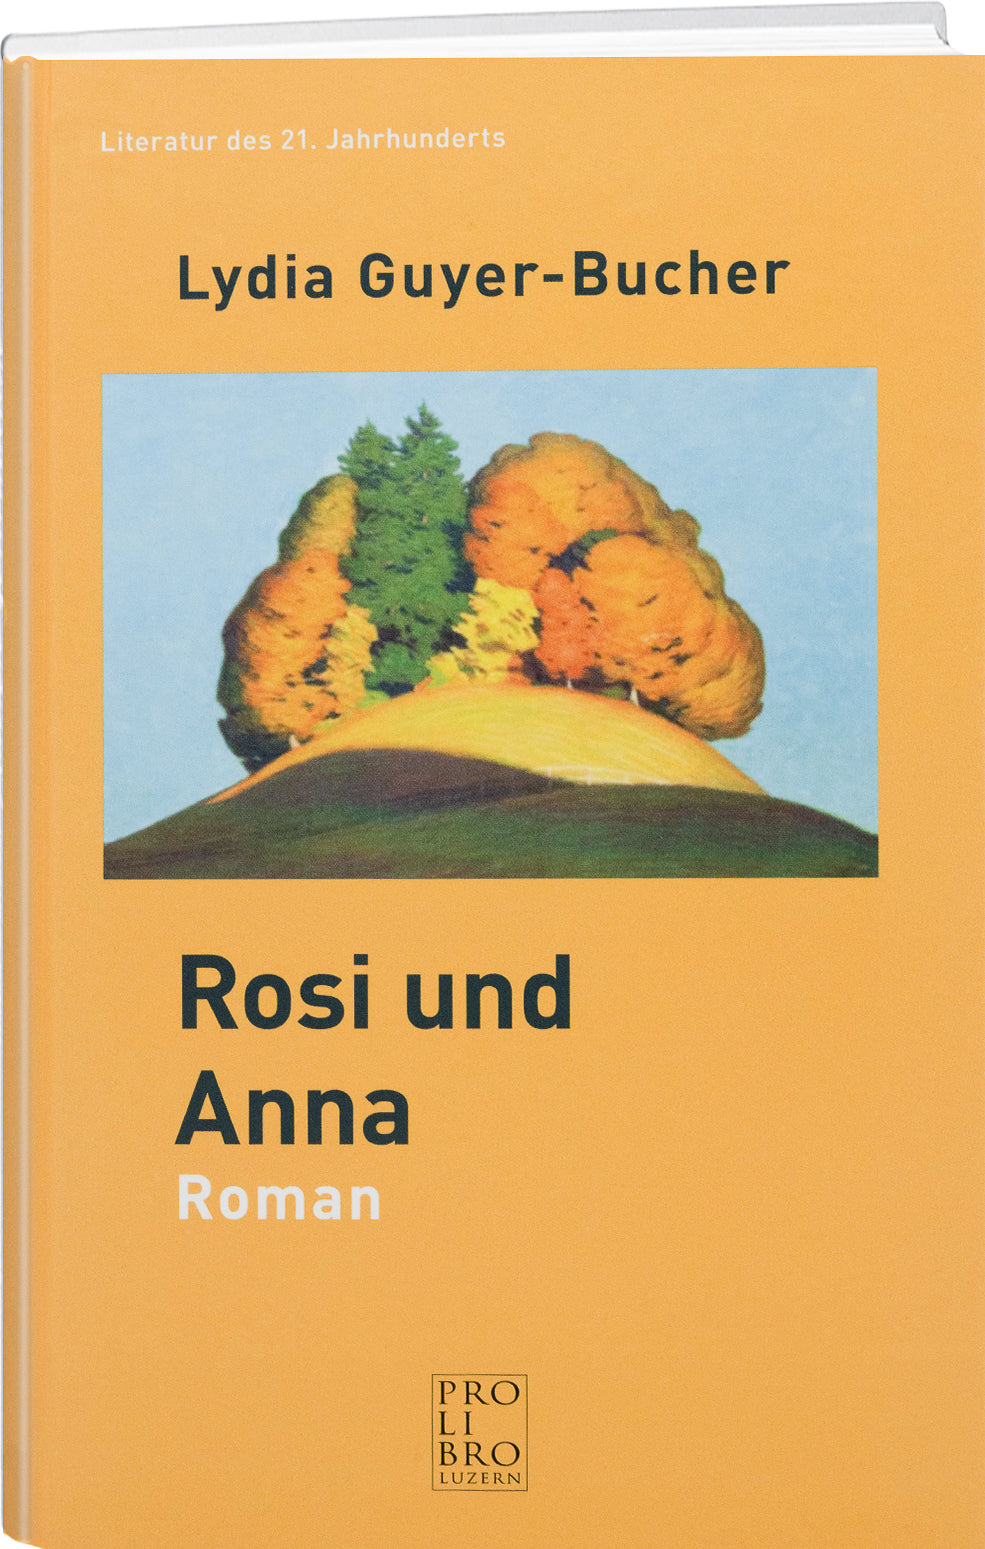 Lydia Guyer-Bucher: Rosi und Anna - prolibro.ch